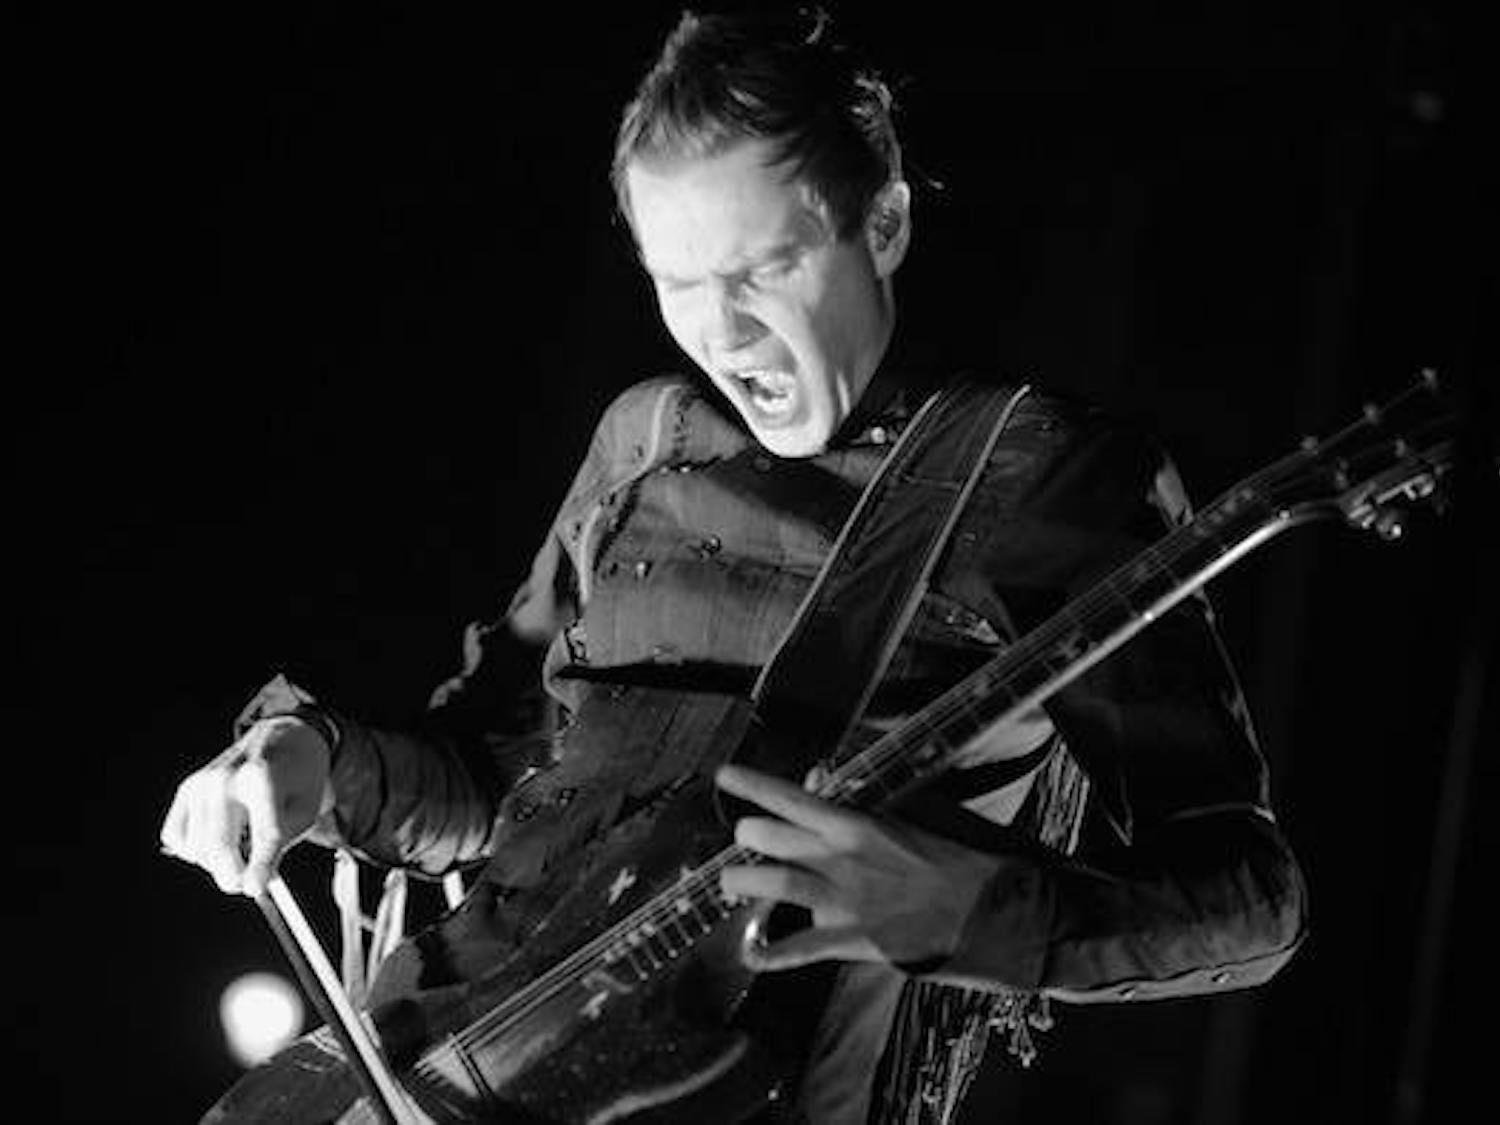 A staple&nbsp;Sigur Rós&nbsp;technique, vocalist Jónsi Birgisson uses a viola bow to play his electric guitar